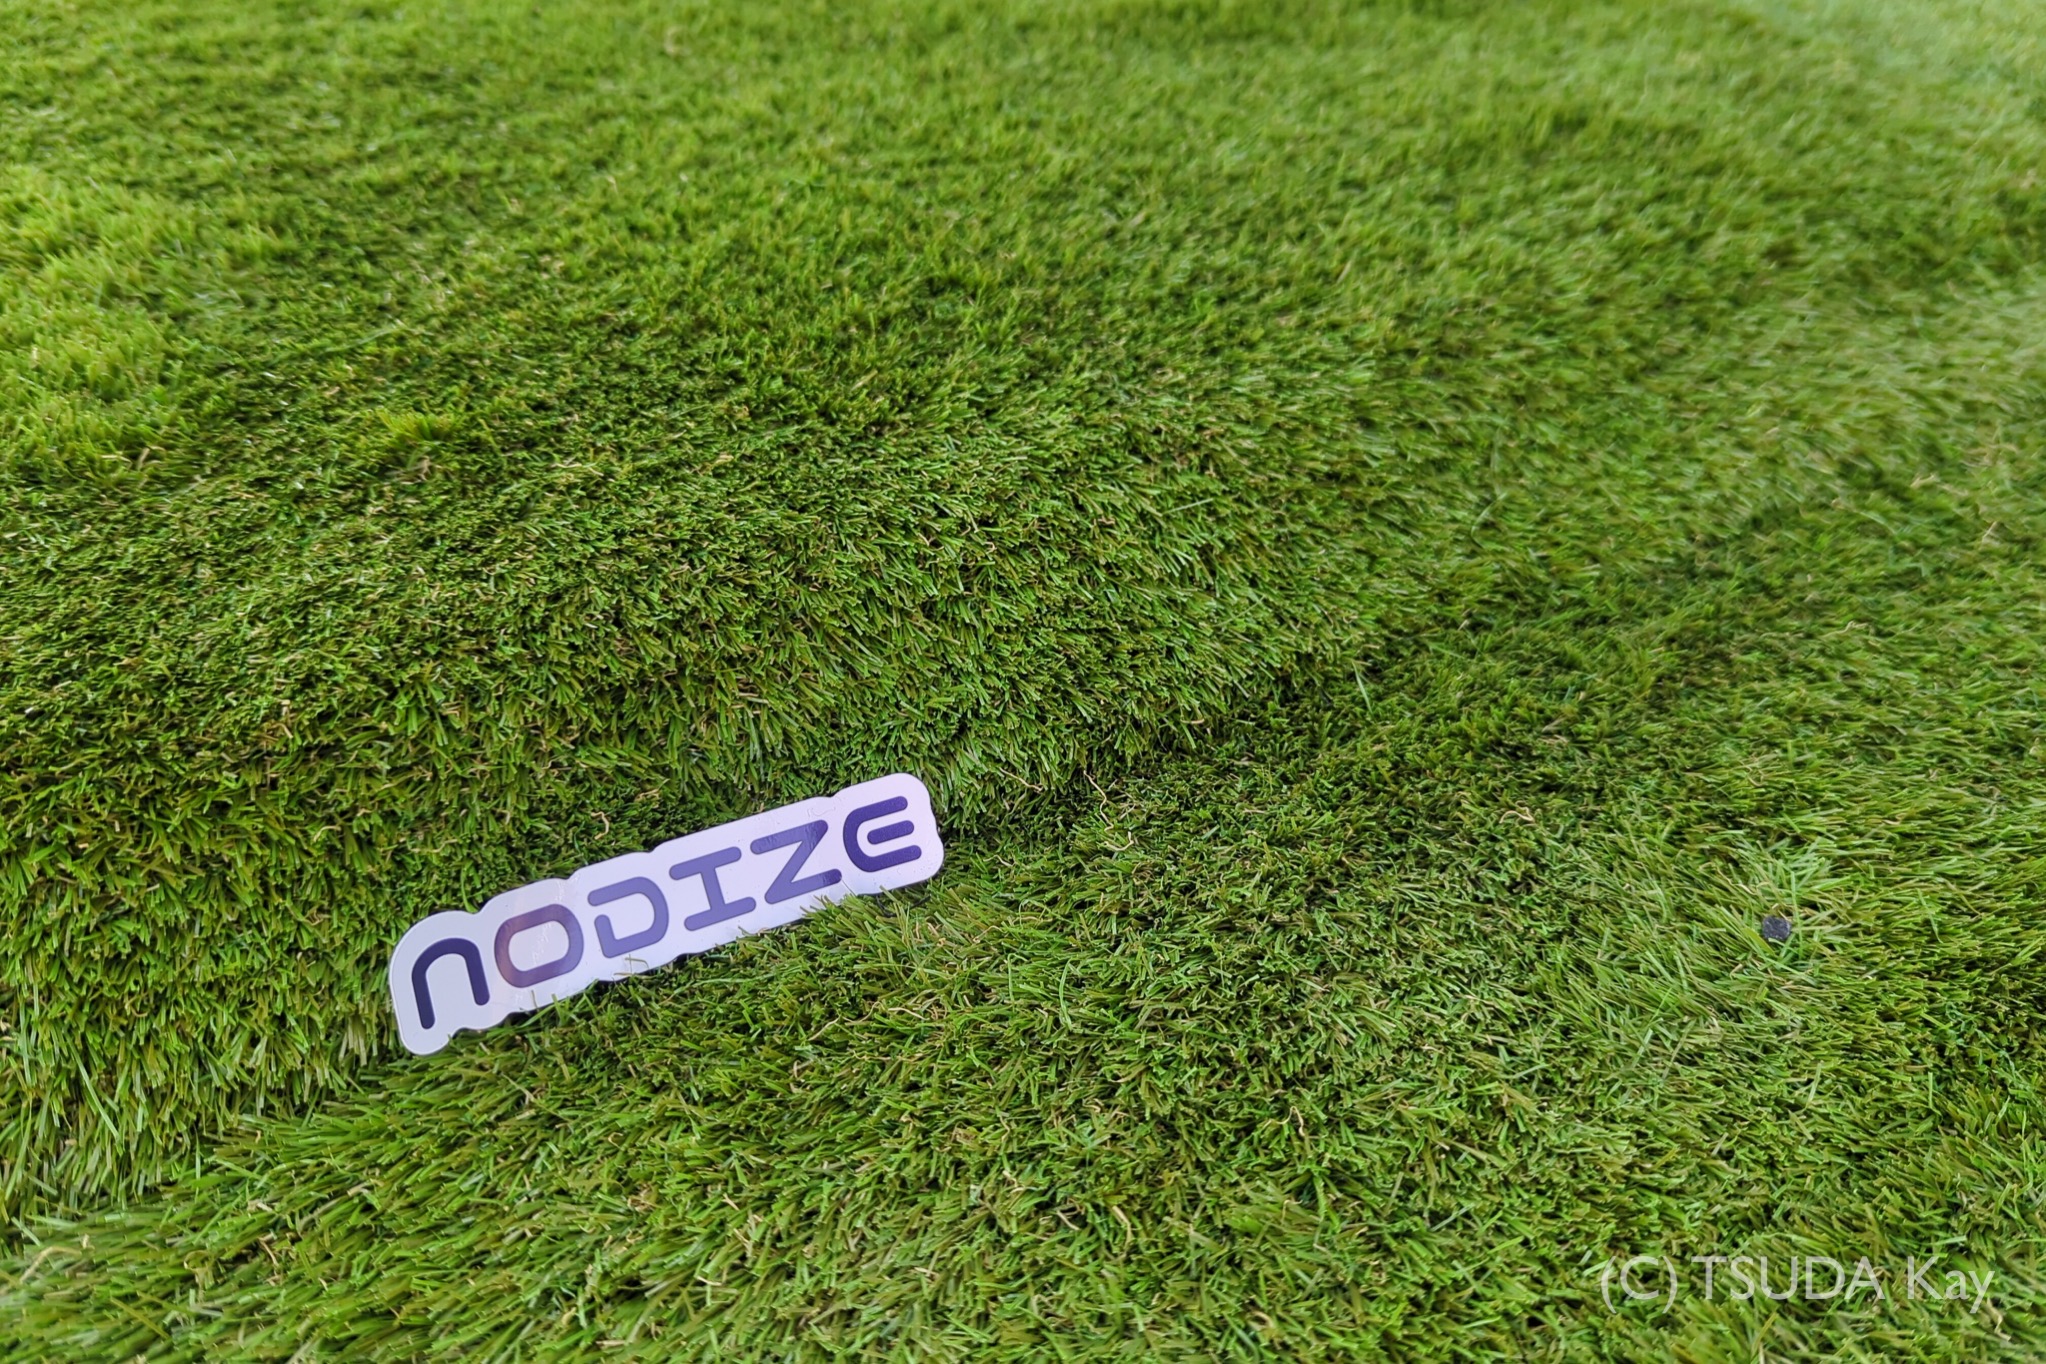 Nodize launched 05